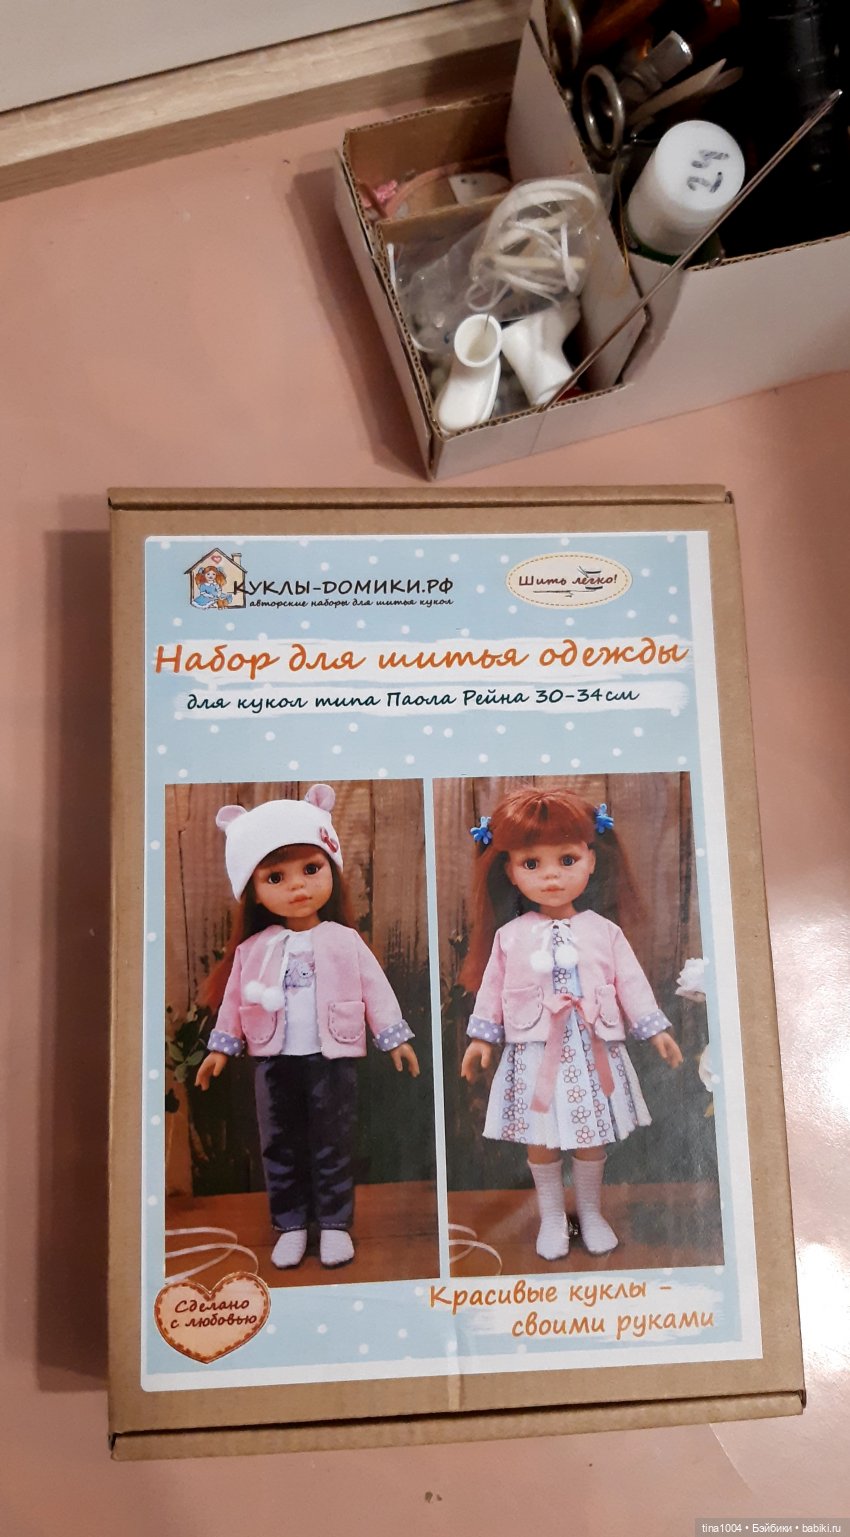 Кукольный домик своими руками: как сделать своими руками? Пошаговые мастер-классы с фото